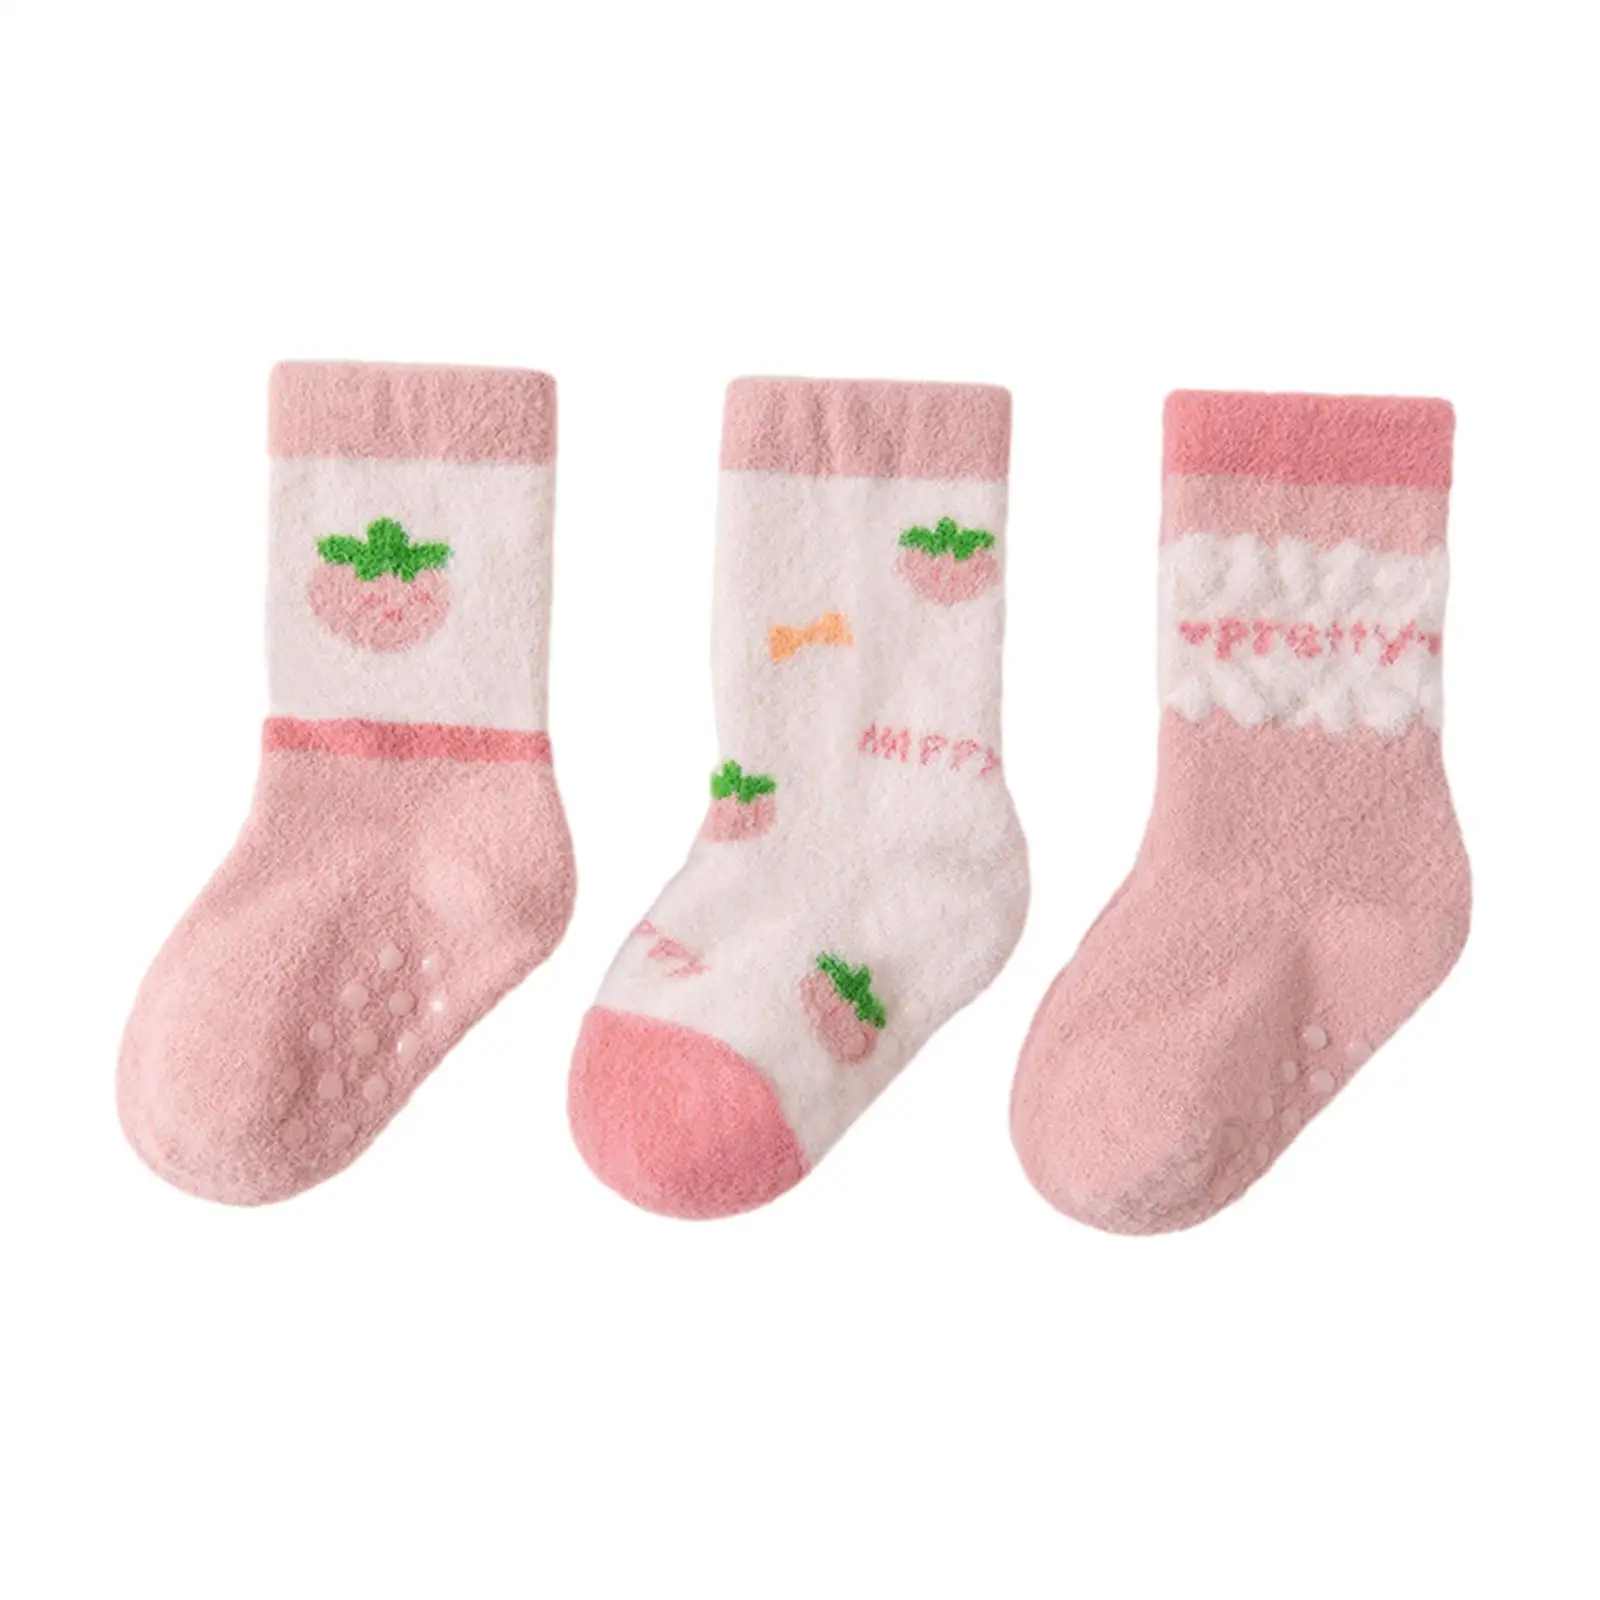 3 Pairs Baby Socks Non Slip Winter Socks for Infants Newborn Living Room